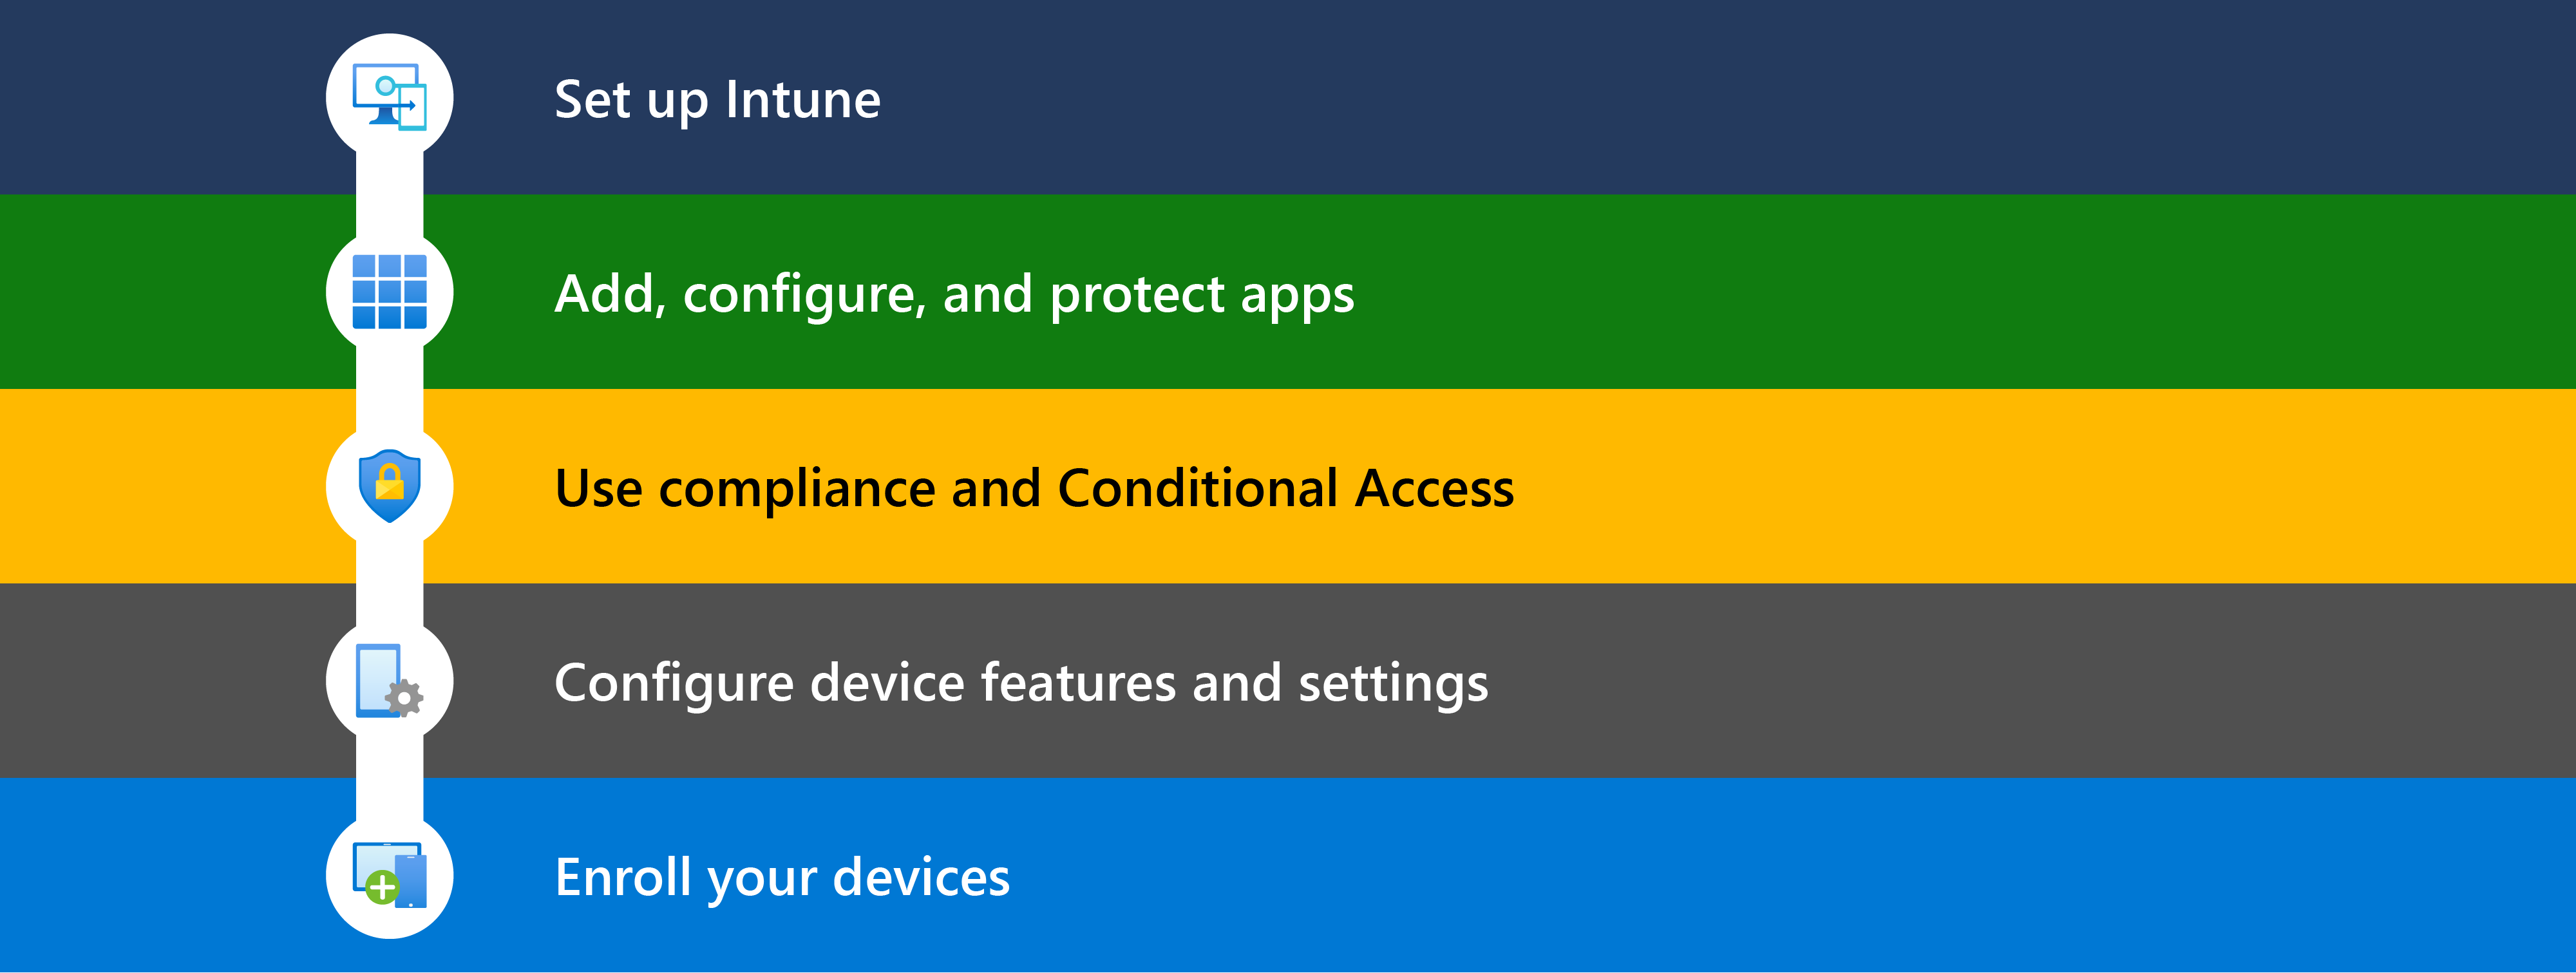 Diagram znázorňující různé kroky, jak začít s Microsoft Intune, včetně nastavení, přidávání aplikací, dodržování předpisů & podmíněného přístupu, konfigurace funkcí zařízení a následné registrace zařízení ke správě